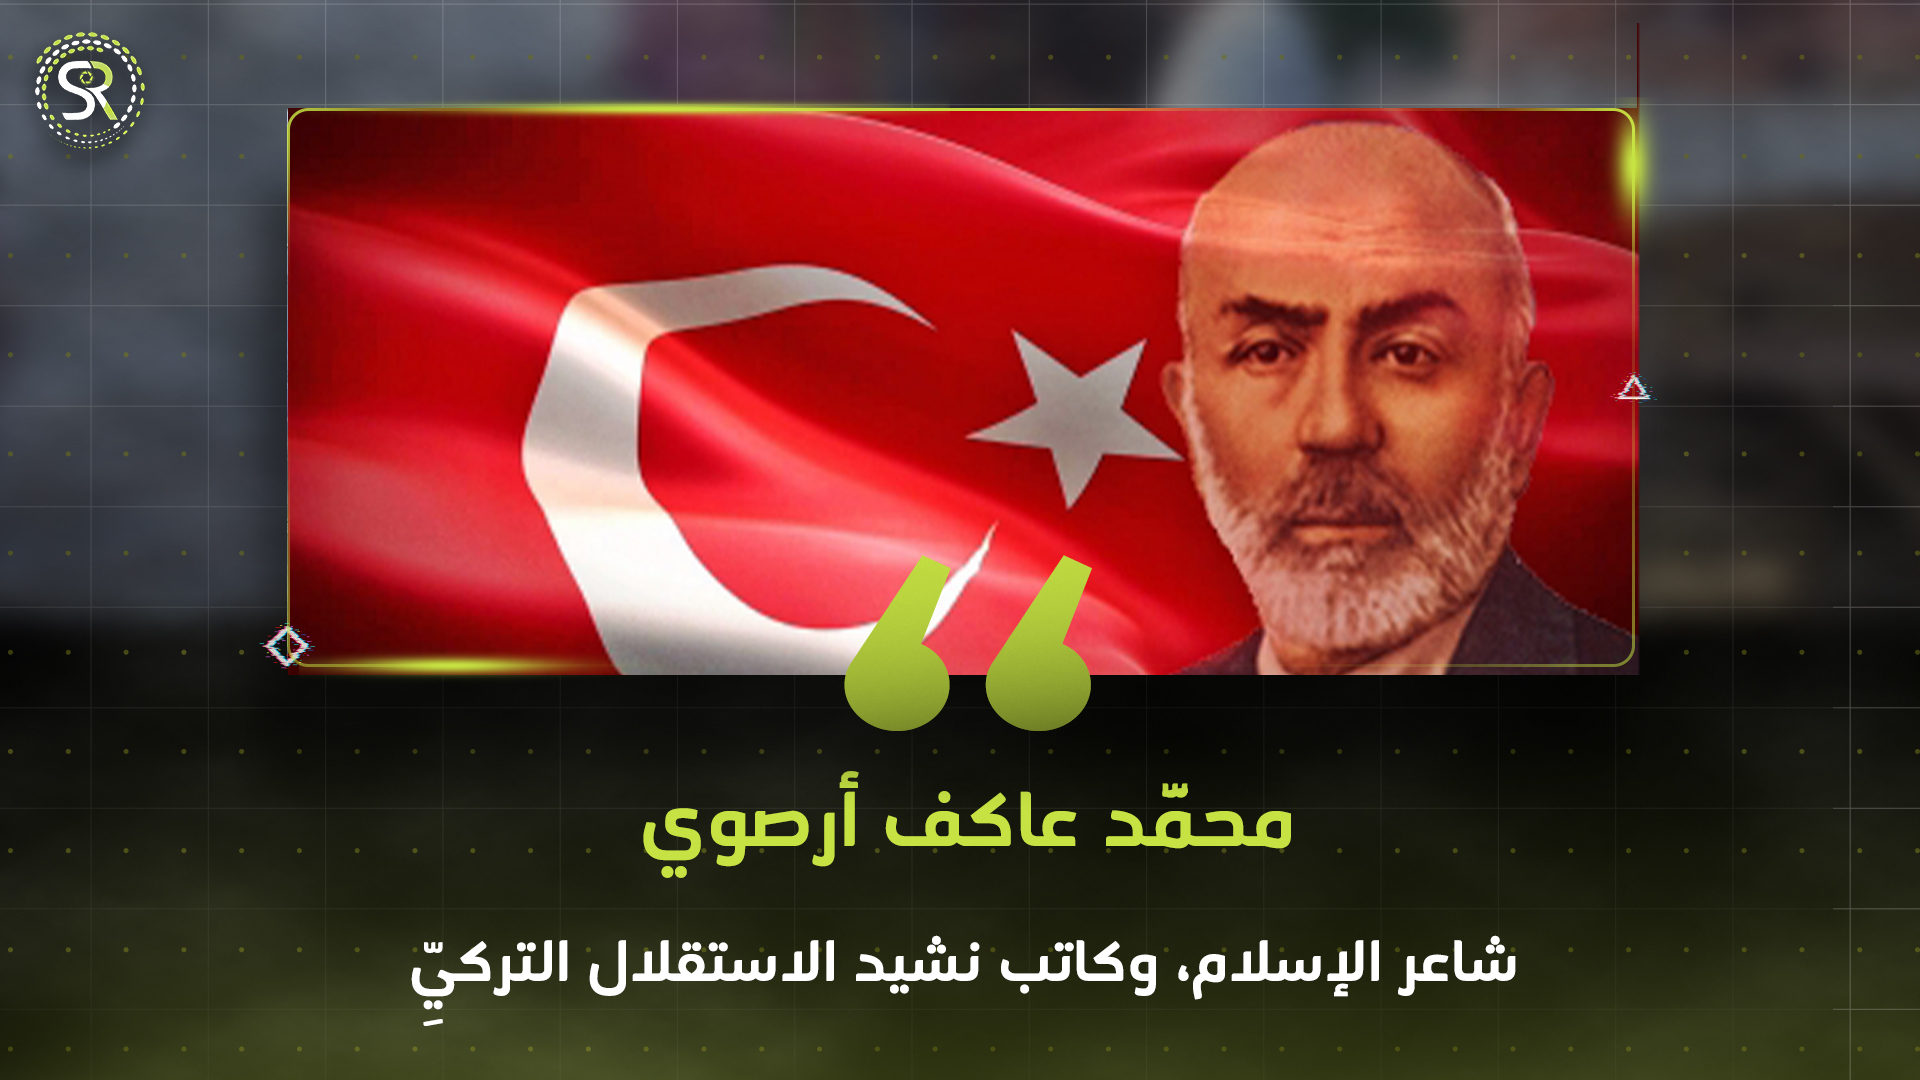 محمَّد عاكف أرصوي، شاعر الإسلام، وكاتب نشيد الاستقلال التركيِّ